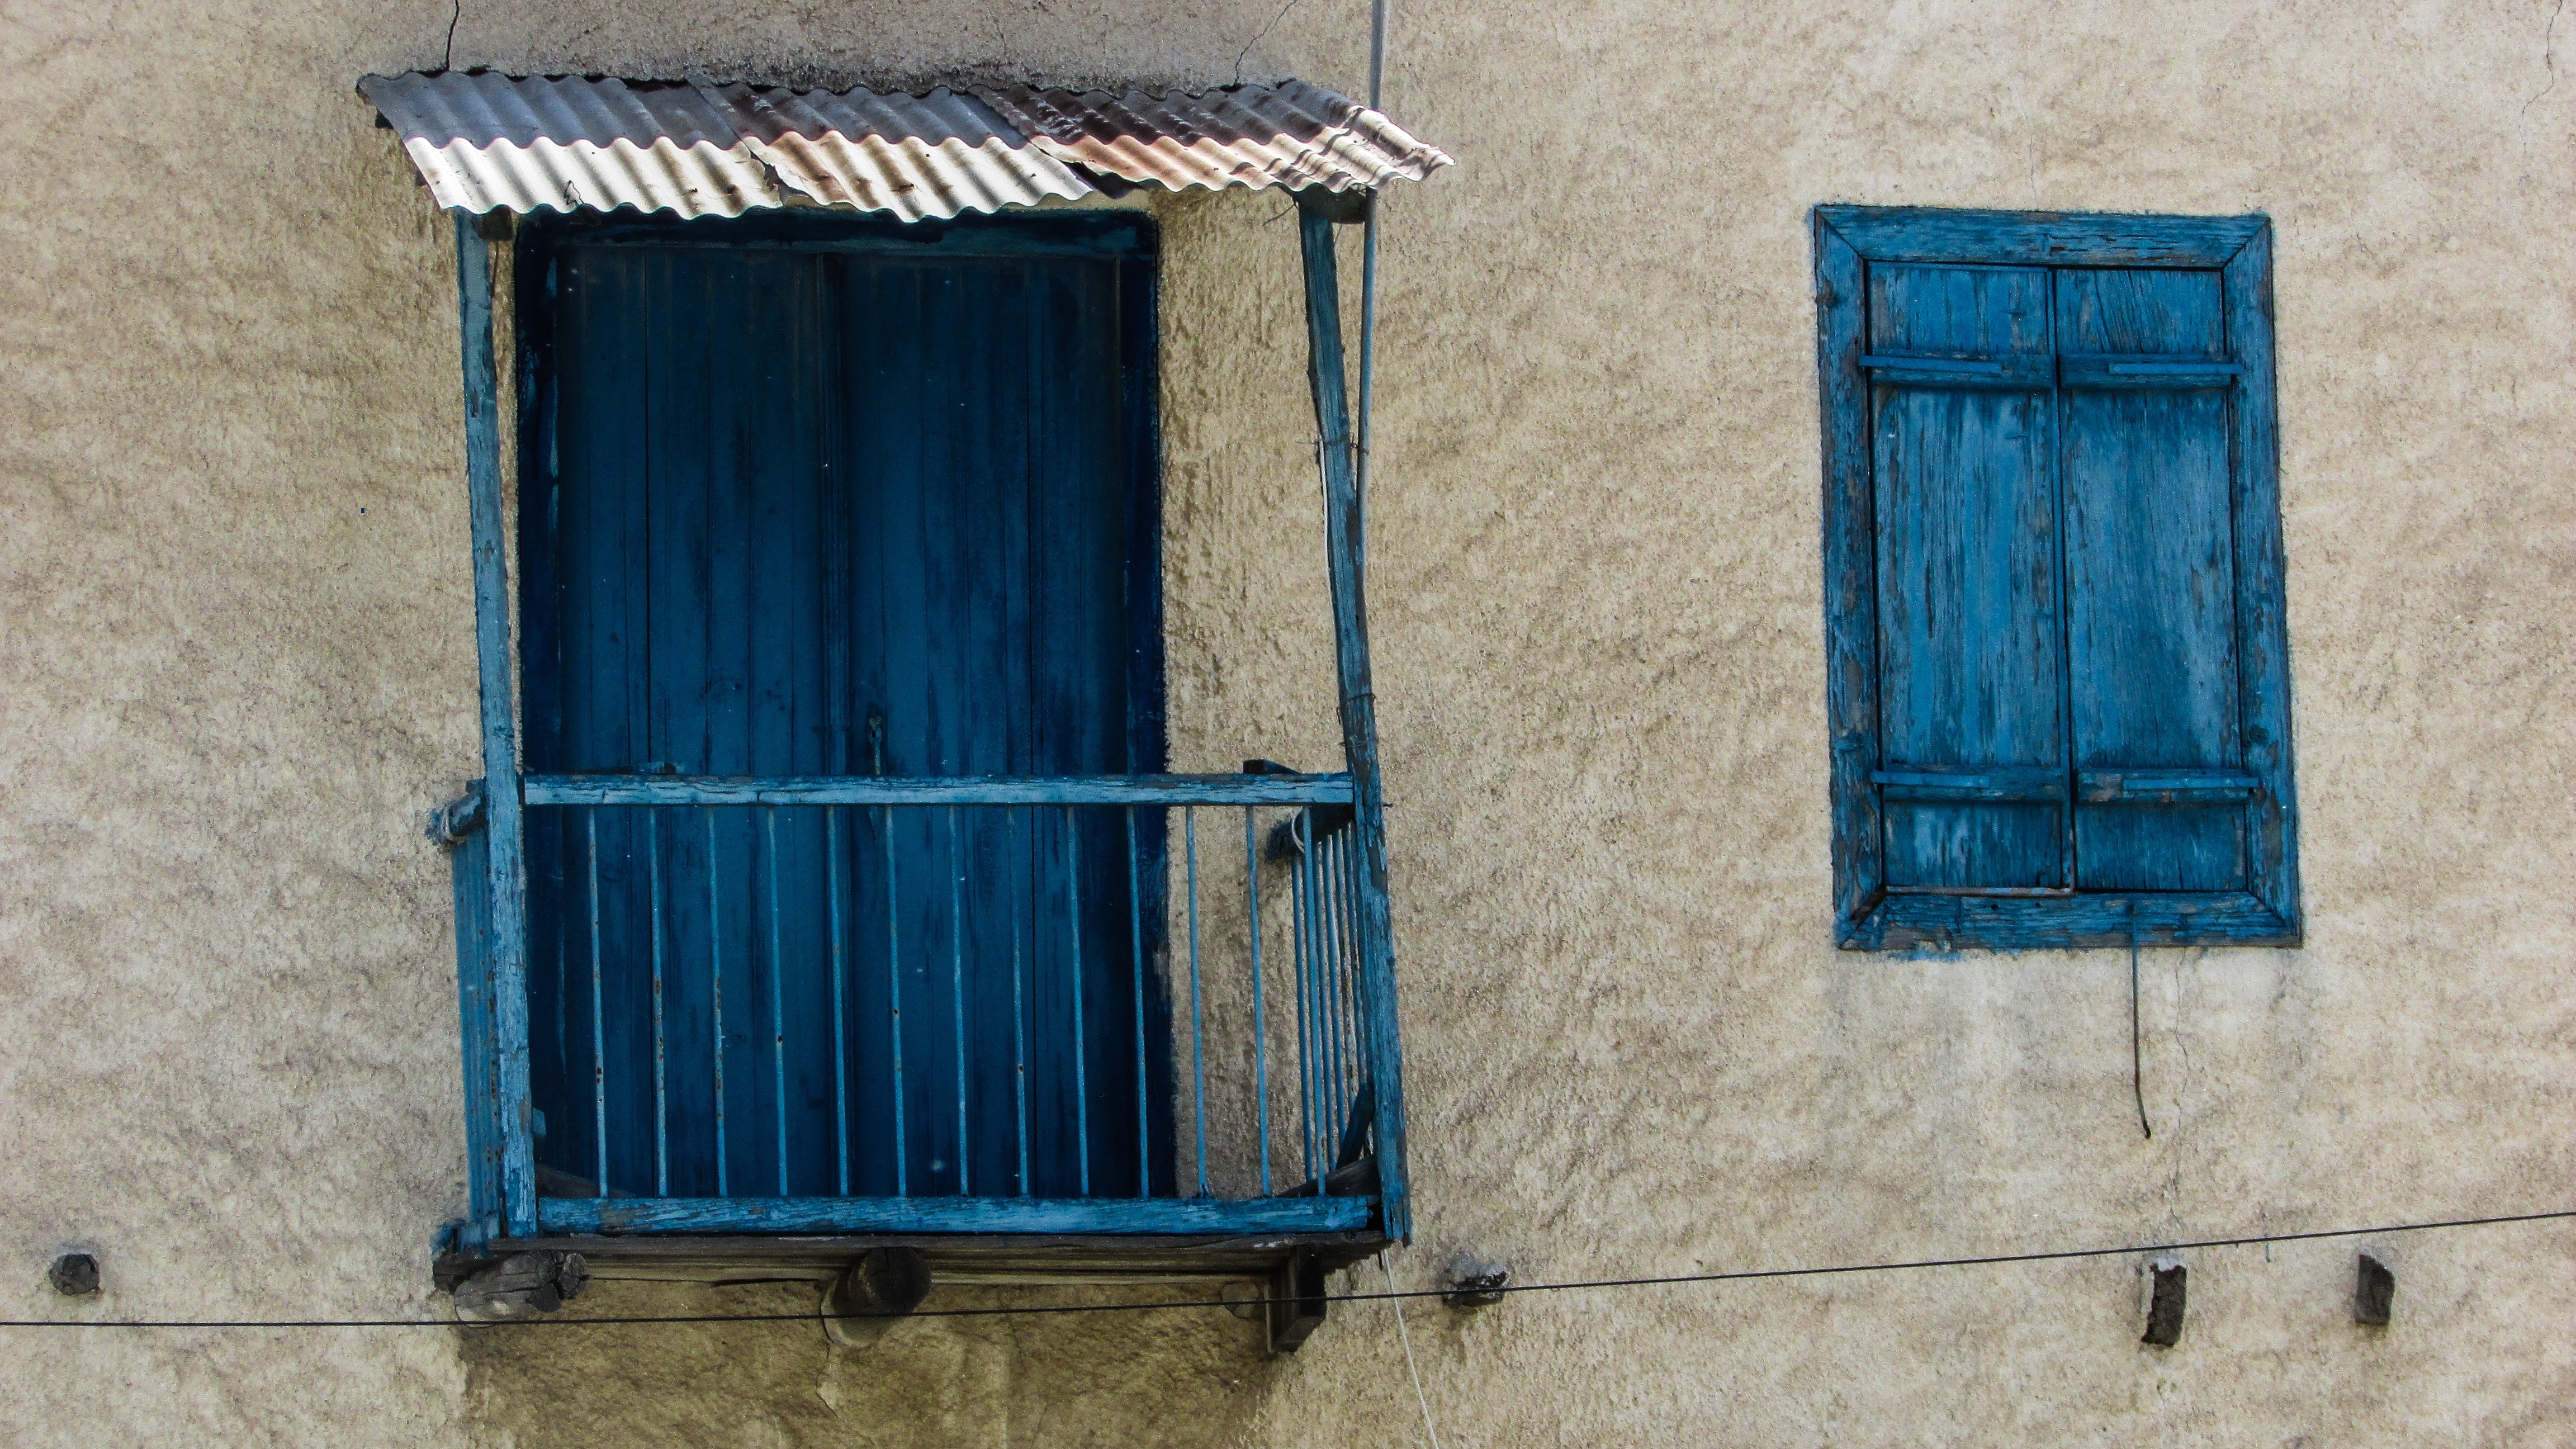 blue wooden window